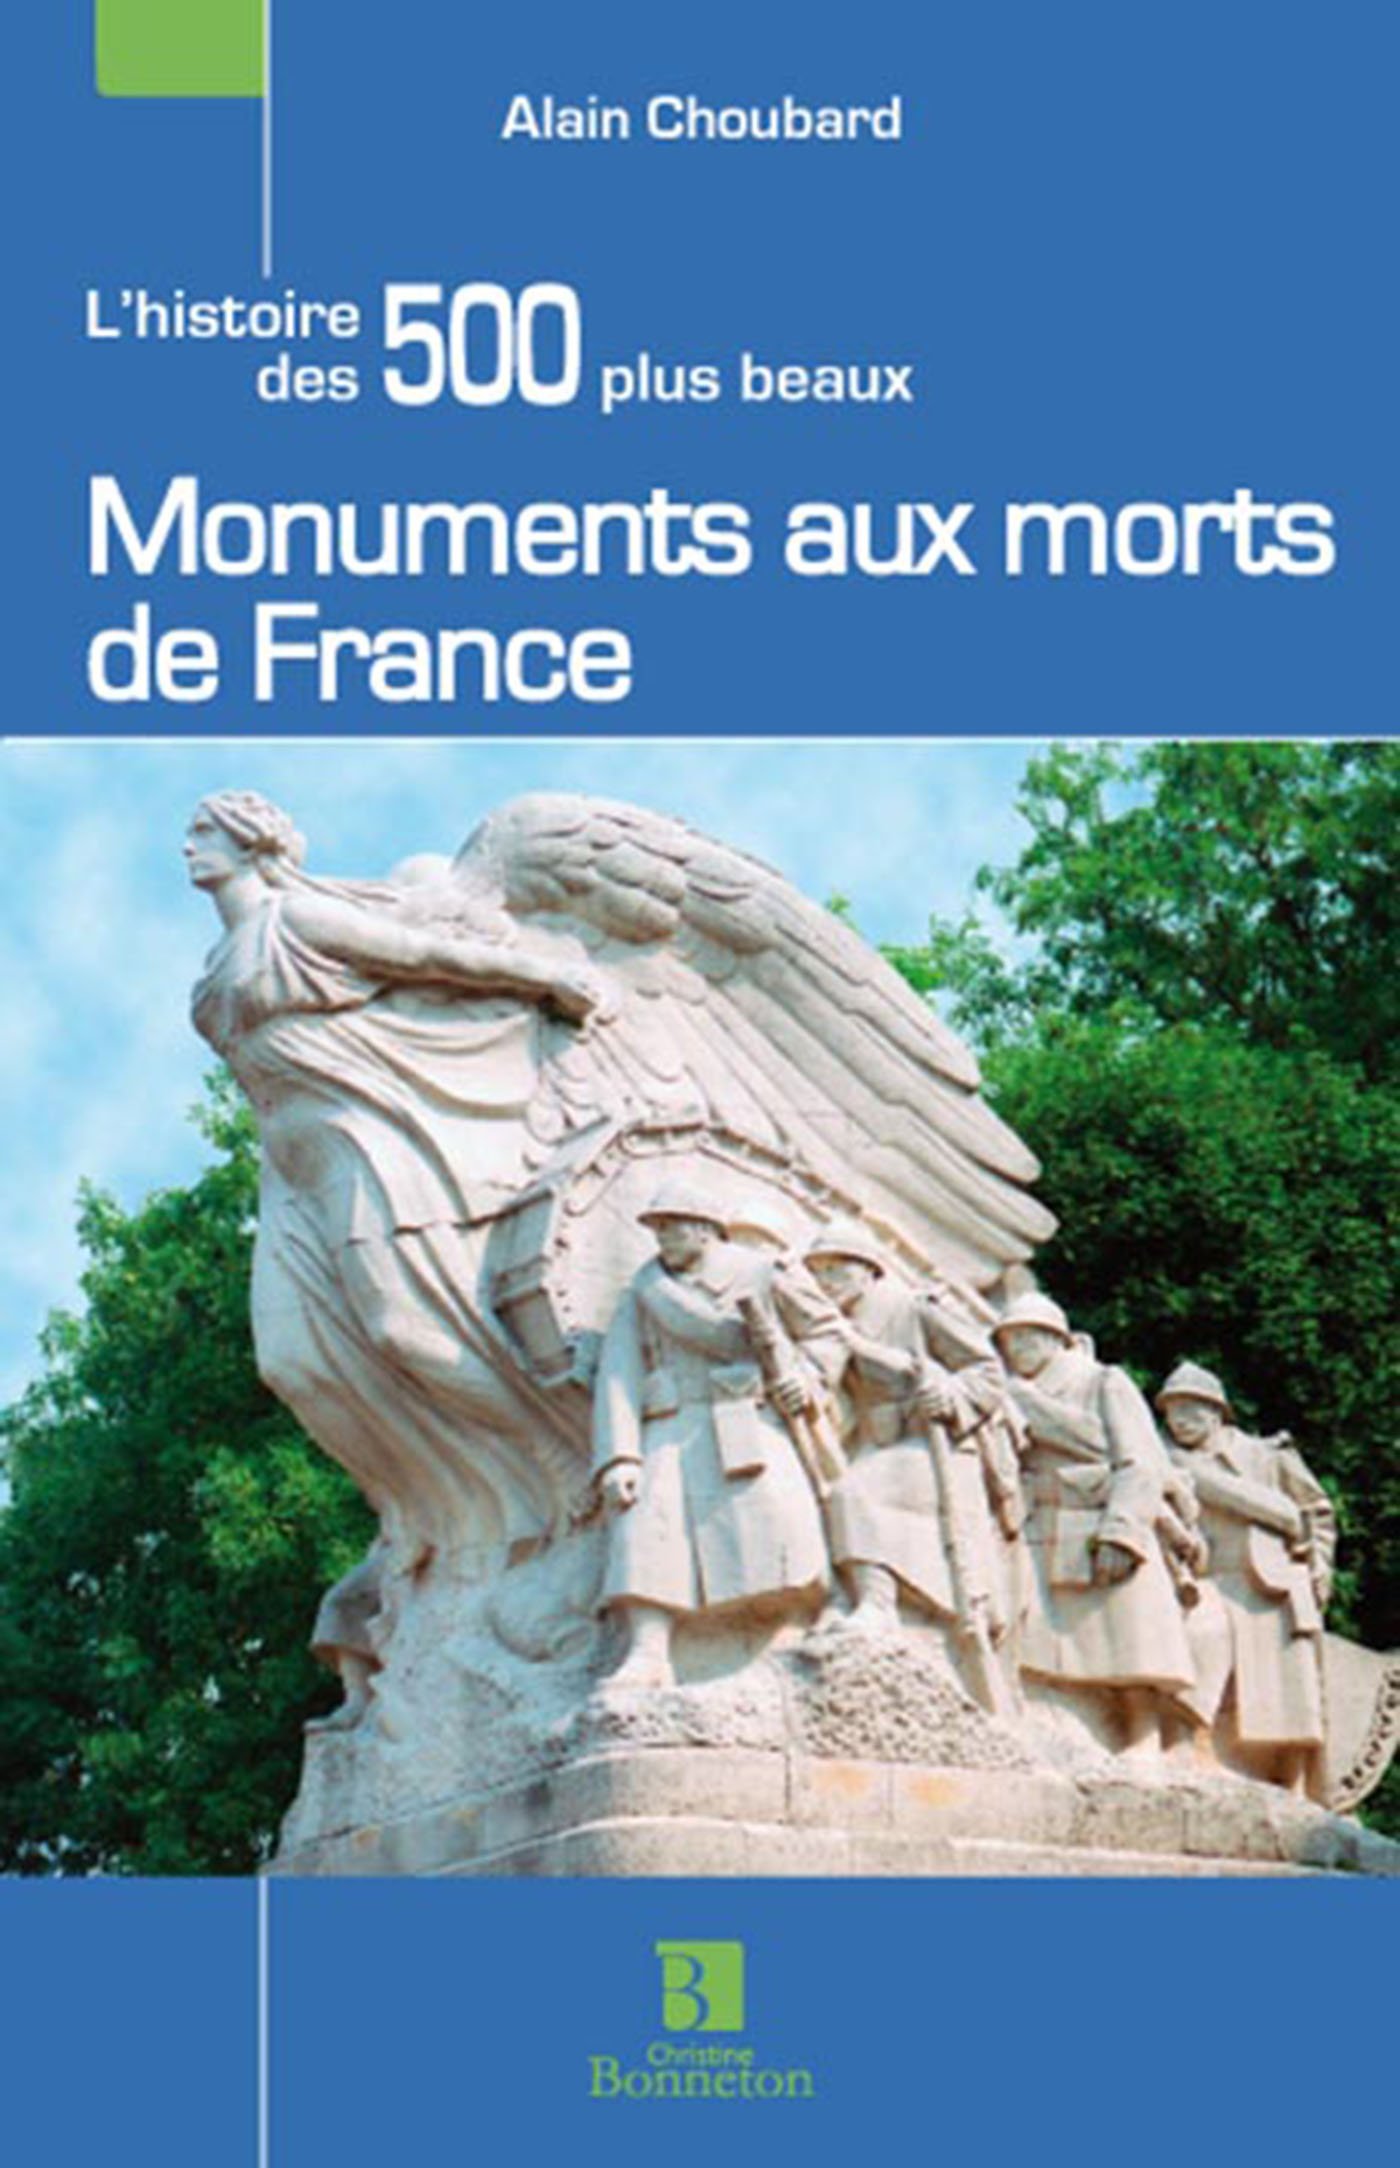 Les 500 plus beaux Monuments aux morts de France, 2014, 256 p.